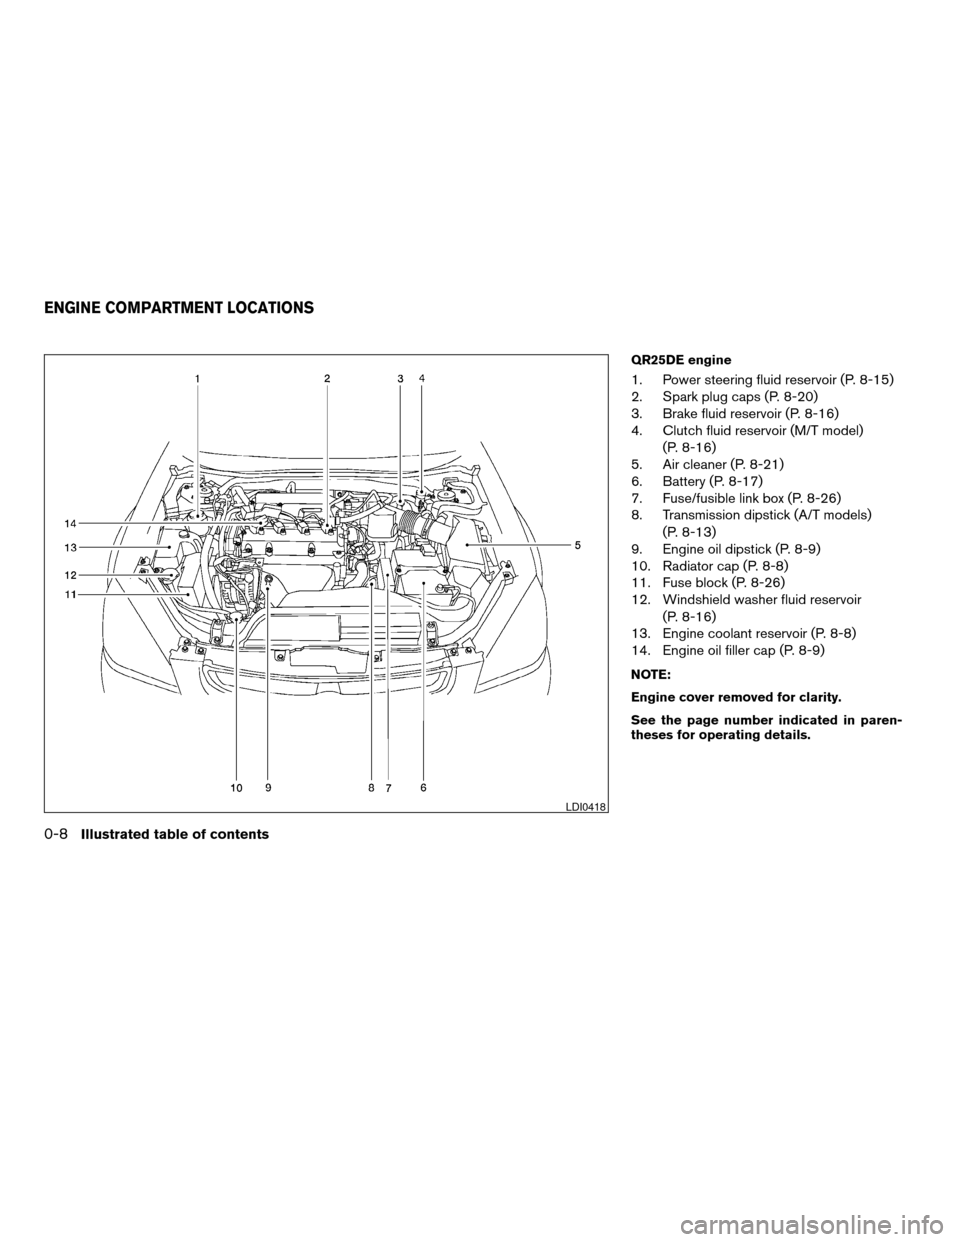 NISSAN ALTIMA 2005 L31 / 3.G Owners Manual QR25DE engine
1. Power steering fluid reservoir (P. 8-15)
2. Spark plug caps (P. 8-20)
3. Brake fluid reservoir (P. 8-16)
4. Clutch fluid reservoir (M/T model)(P. 8-16)
5. Air cleaner (P. 8-21)
6. Bat